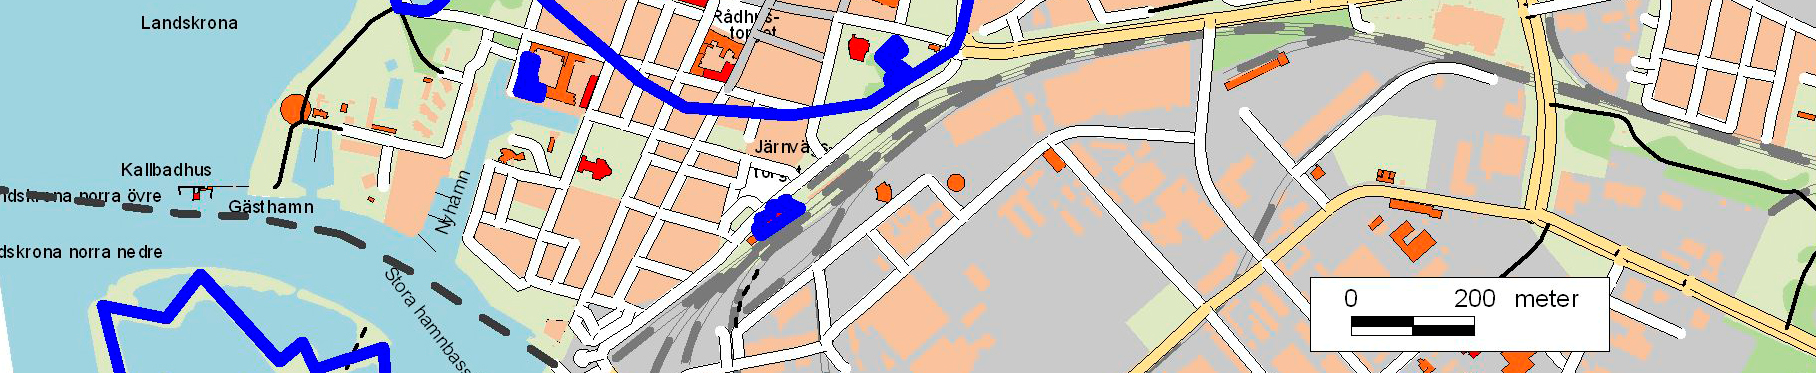 Registrerade fornlämningar är markerade med blått Kyrkoruinen efter Stadskyrkan